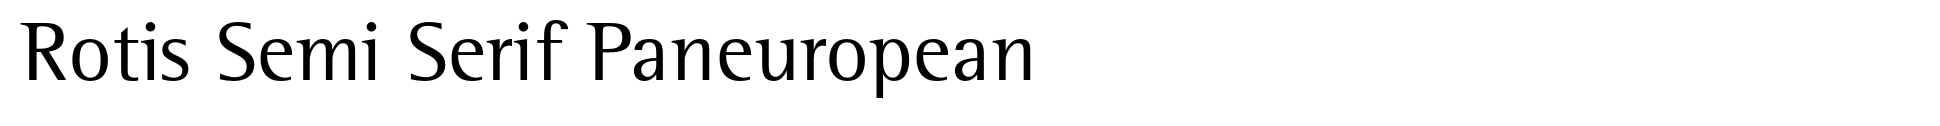 Rotis Semi Serif Paneuropean